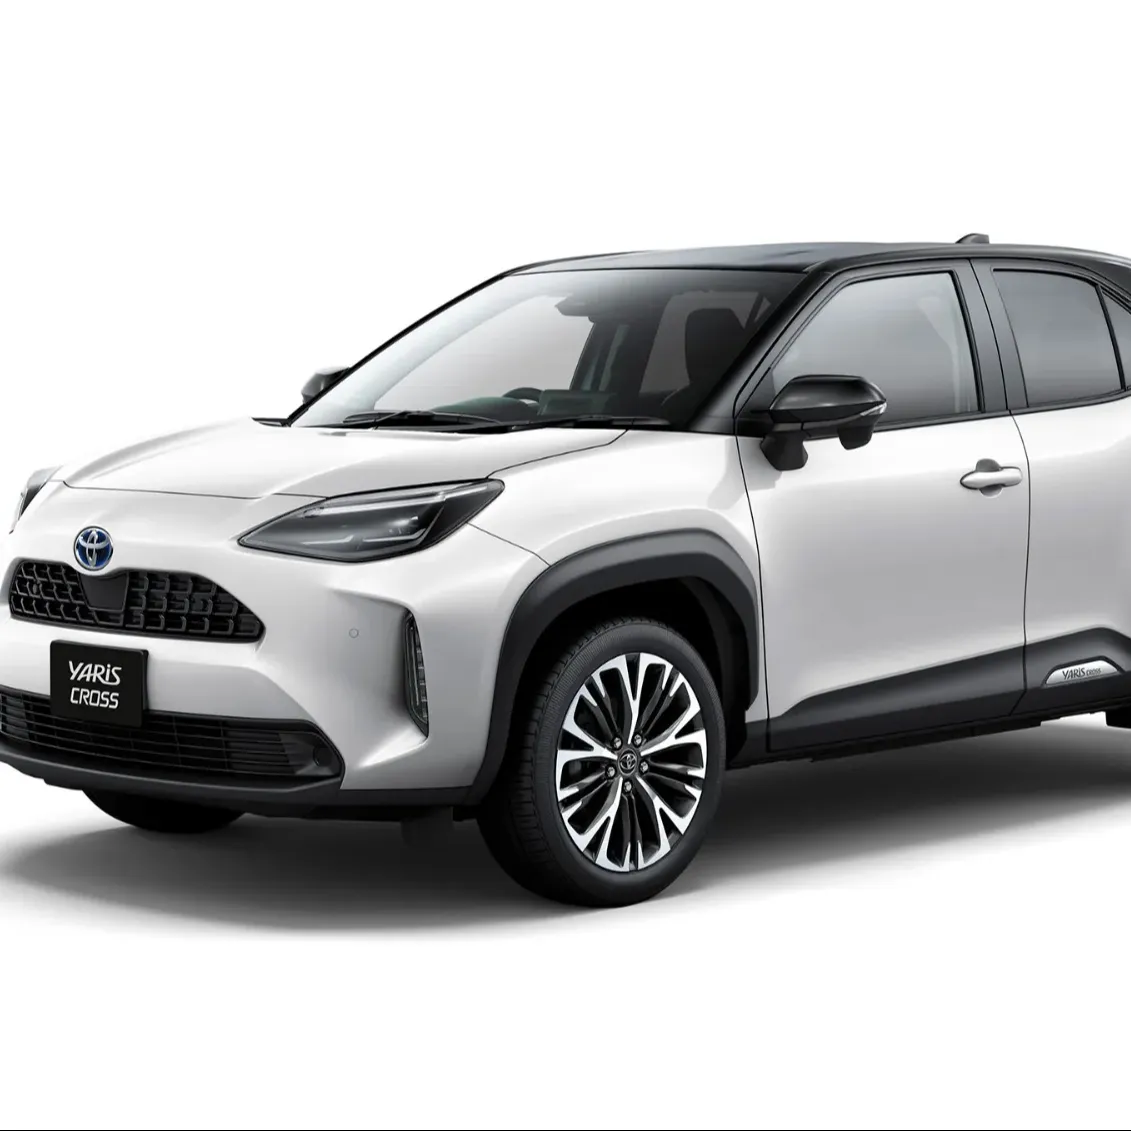 Carros SUV Hybrid urbanos Toyota Yaris Cross Z 2021 Pré-Propriedados, bastante usados, com volante à esquerda e direção direita, veículo em estoque